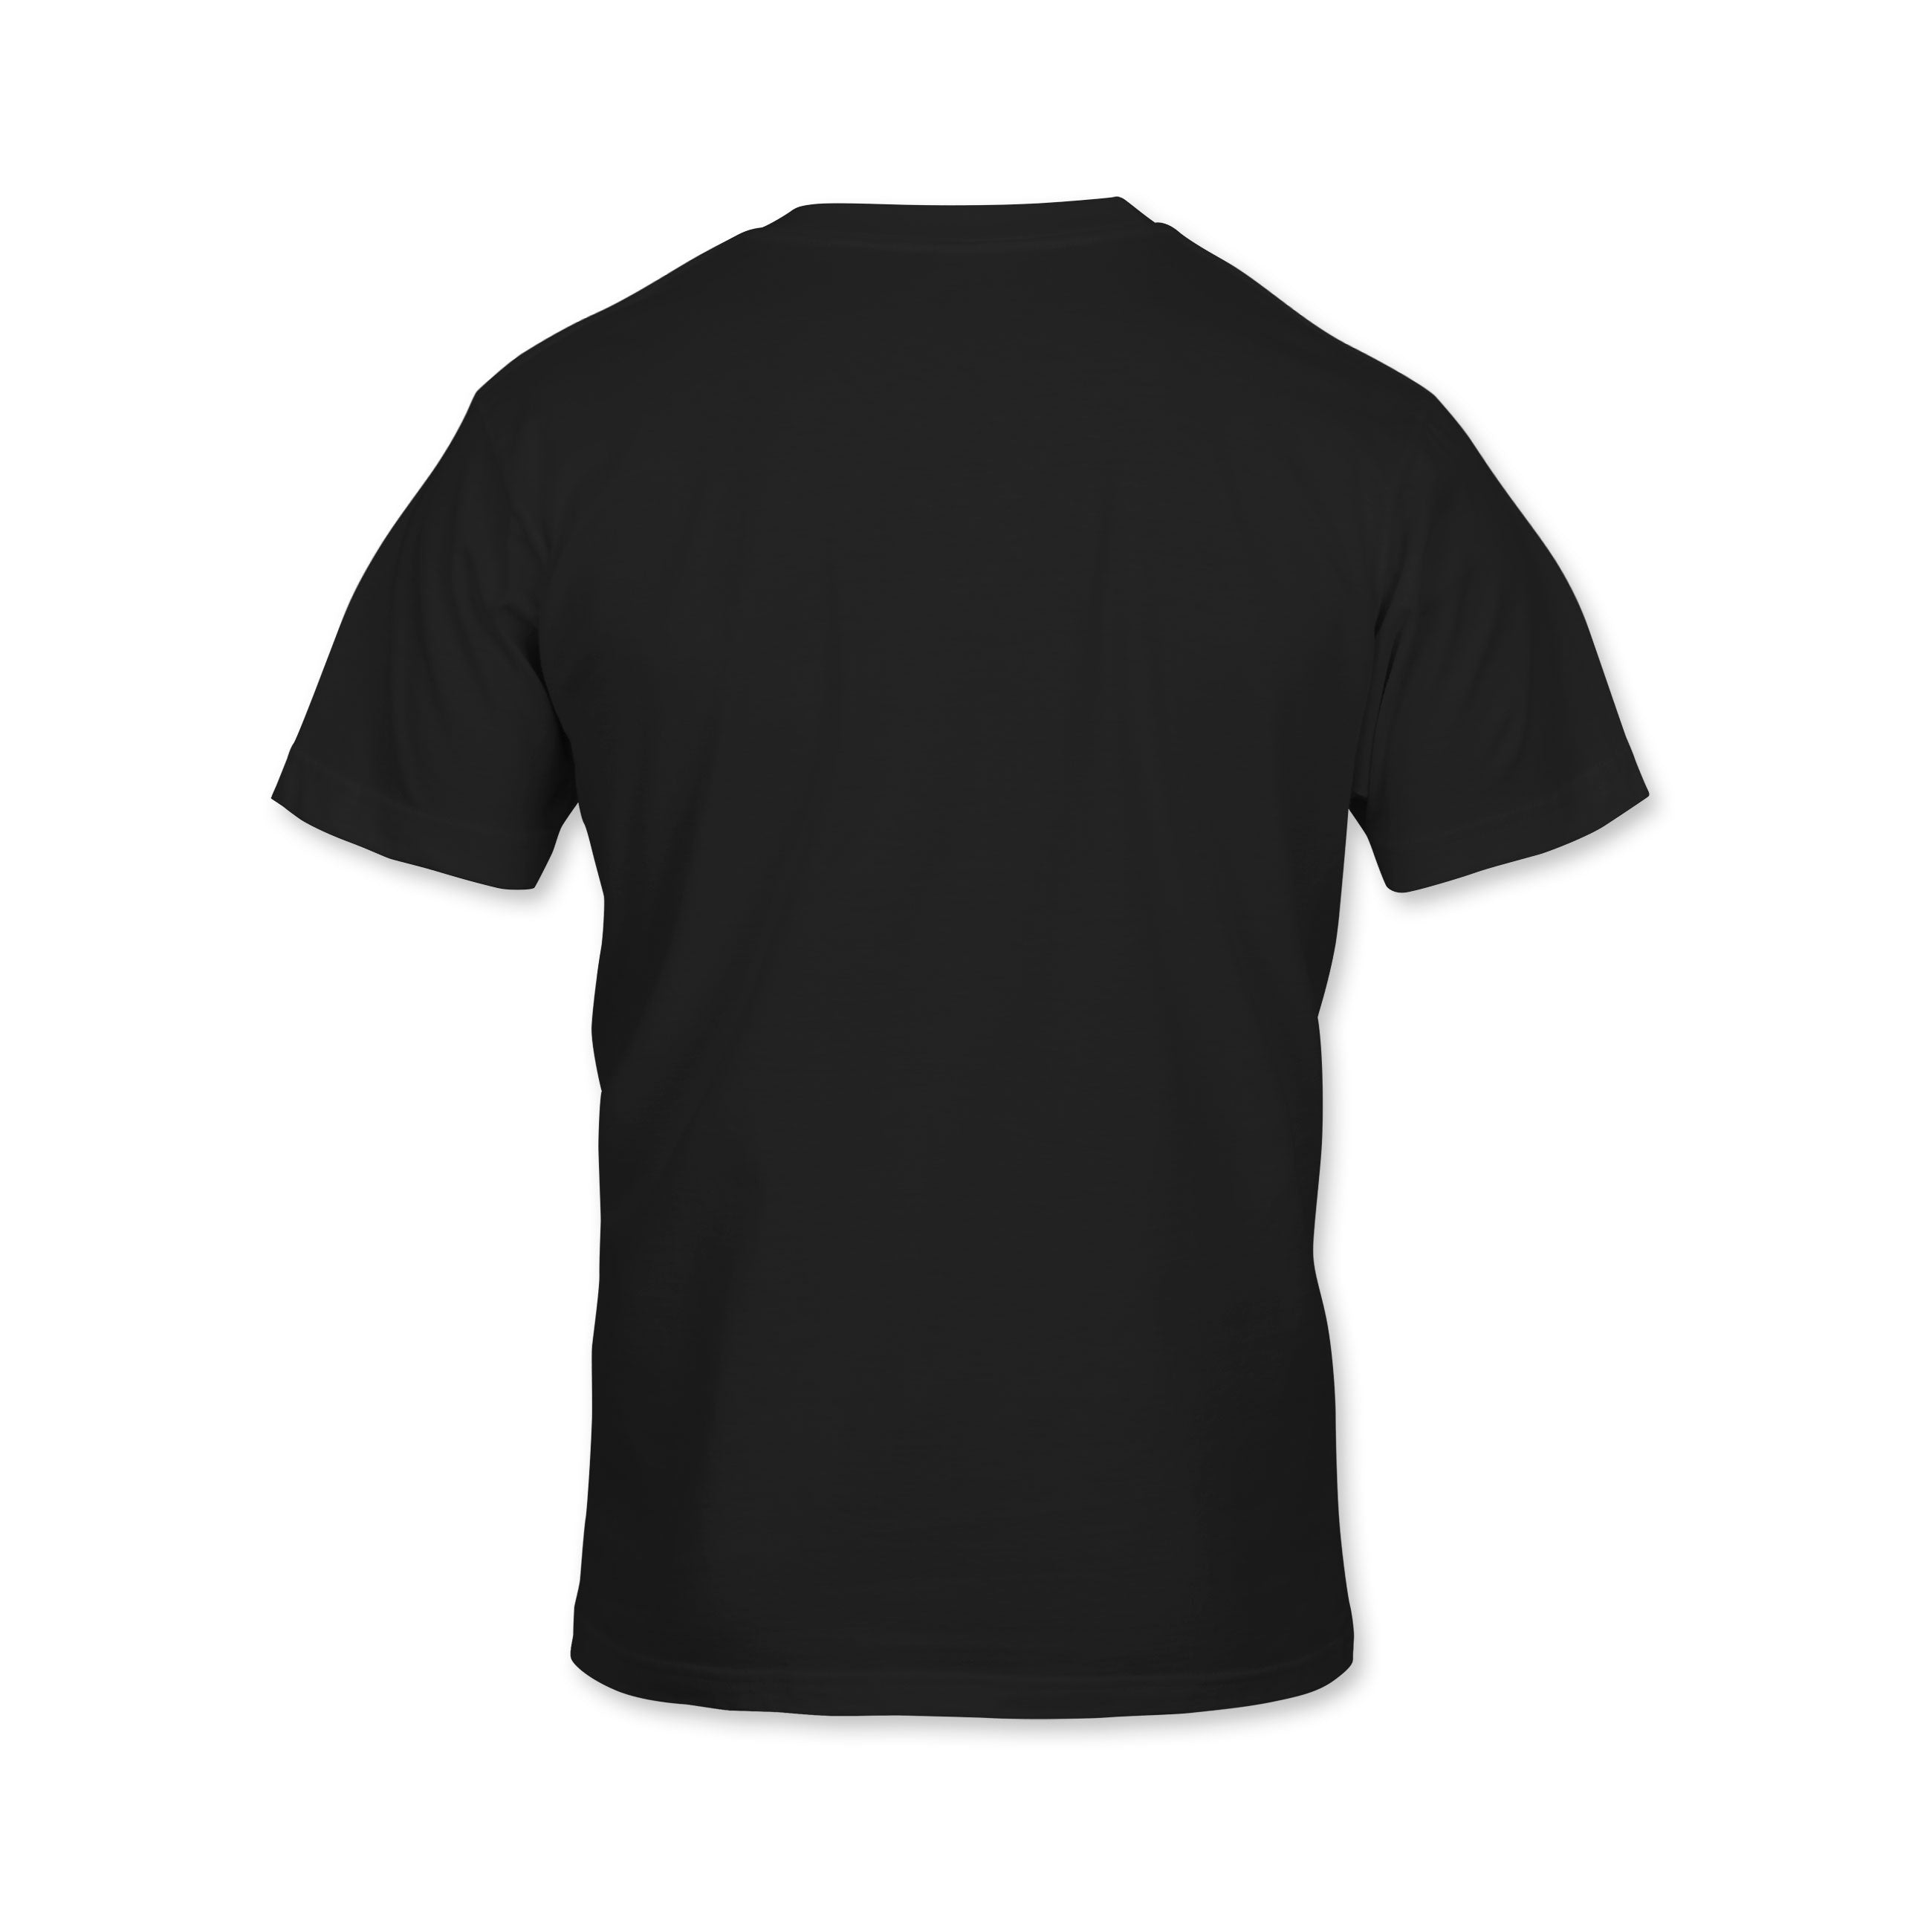 Barong T-shirt - Youth - Black